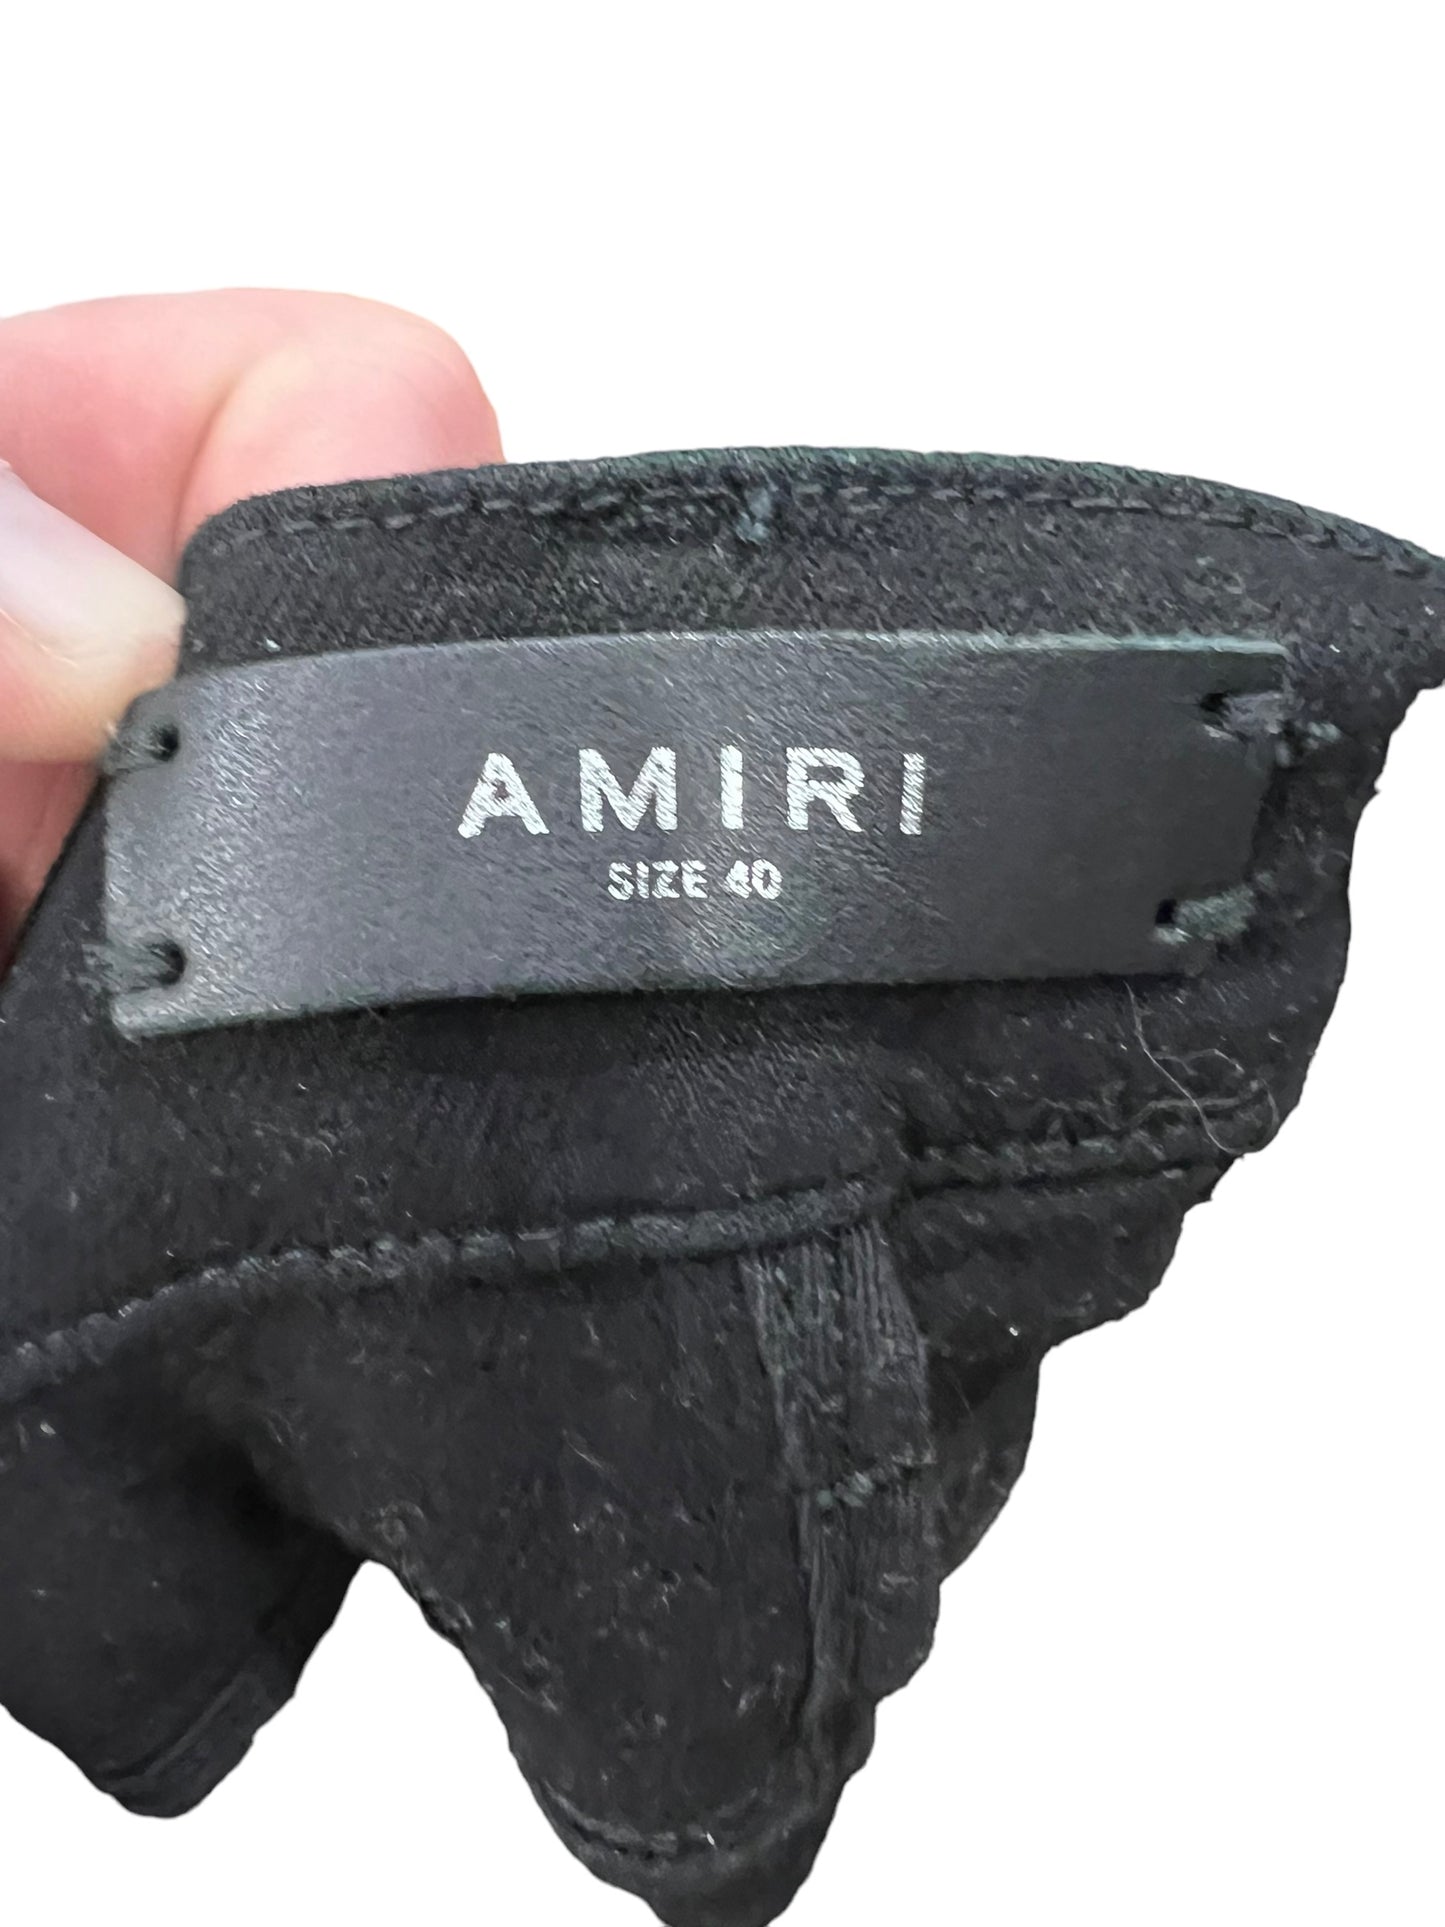 Amiri Black bandana MX1 Size 40